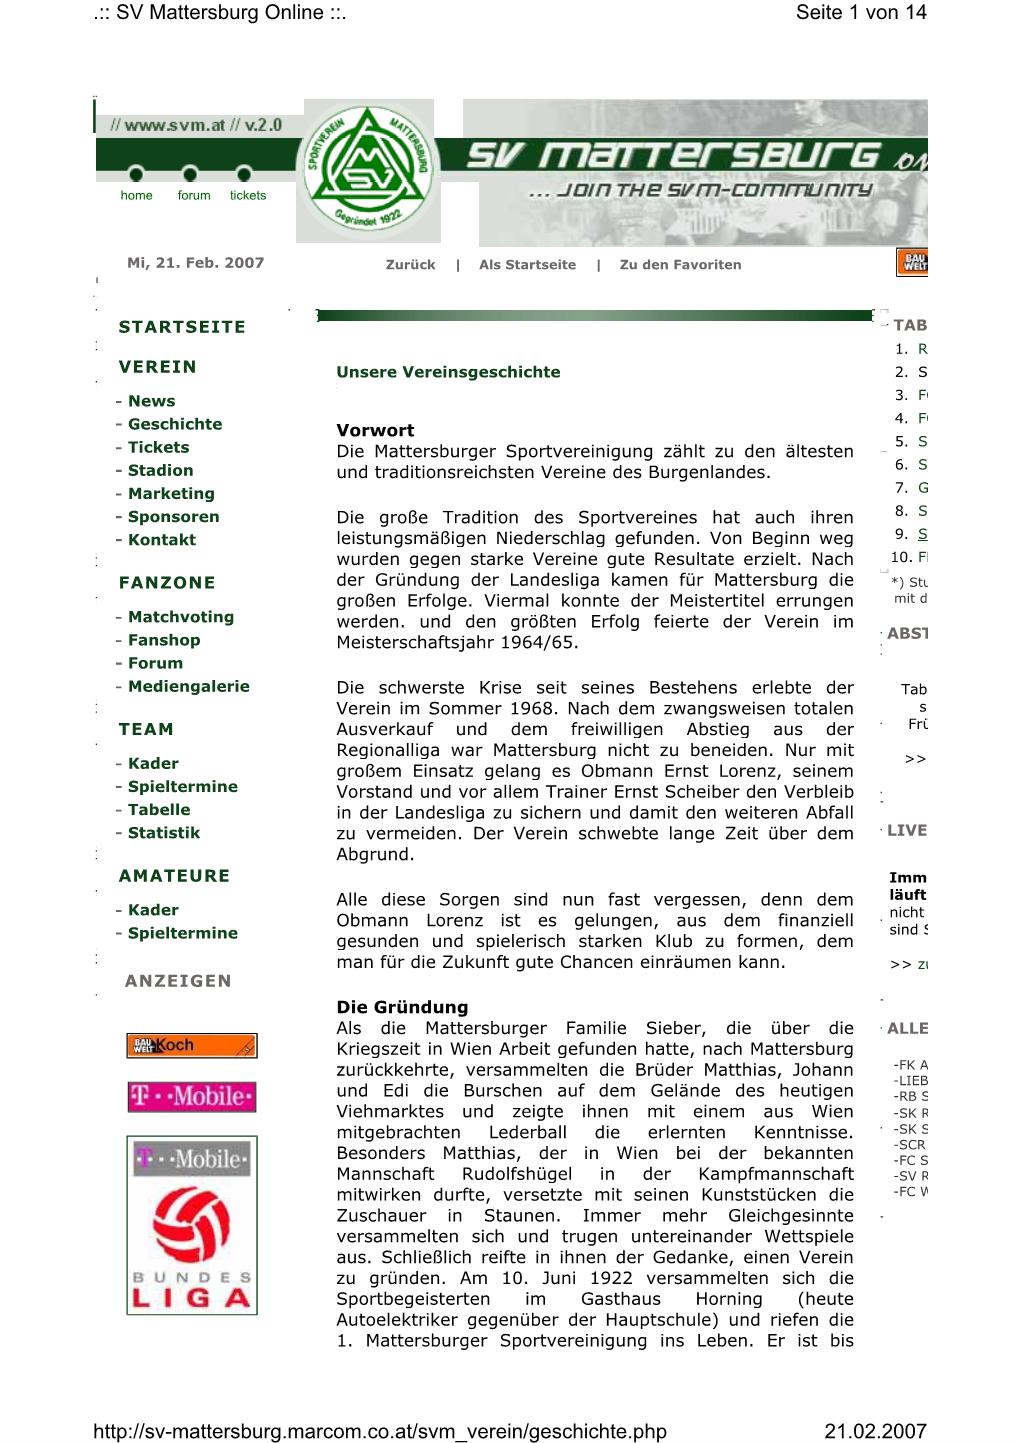 Seite 1 Von 14 .:: SV Mattersburg Online ::. 21.02.2007 Http